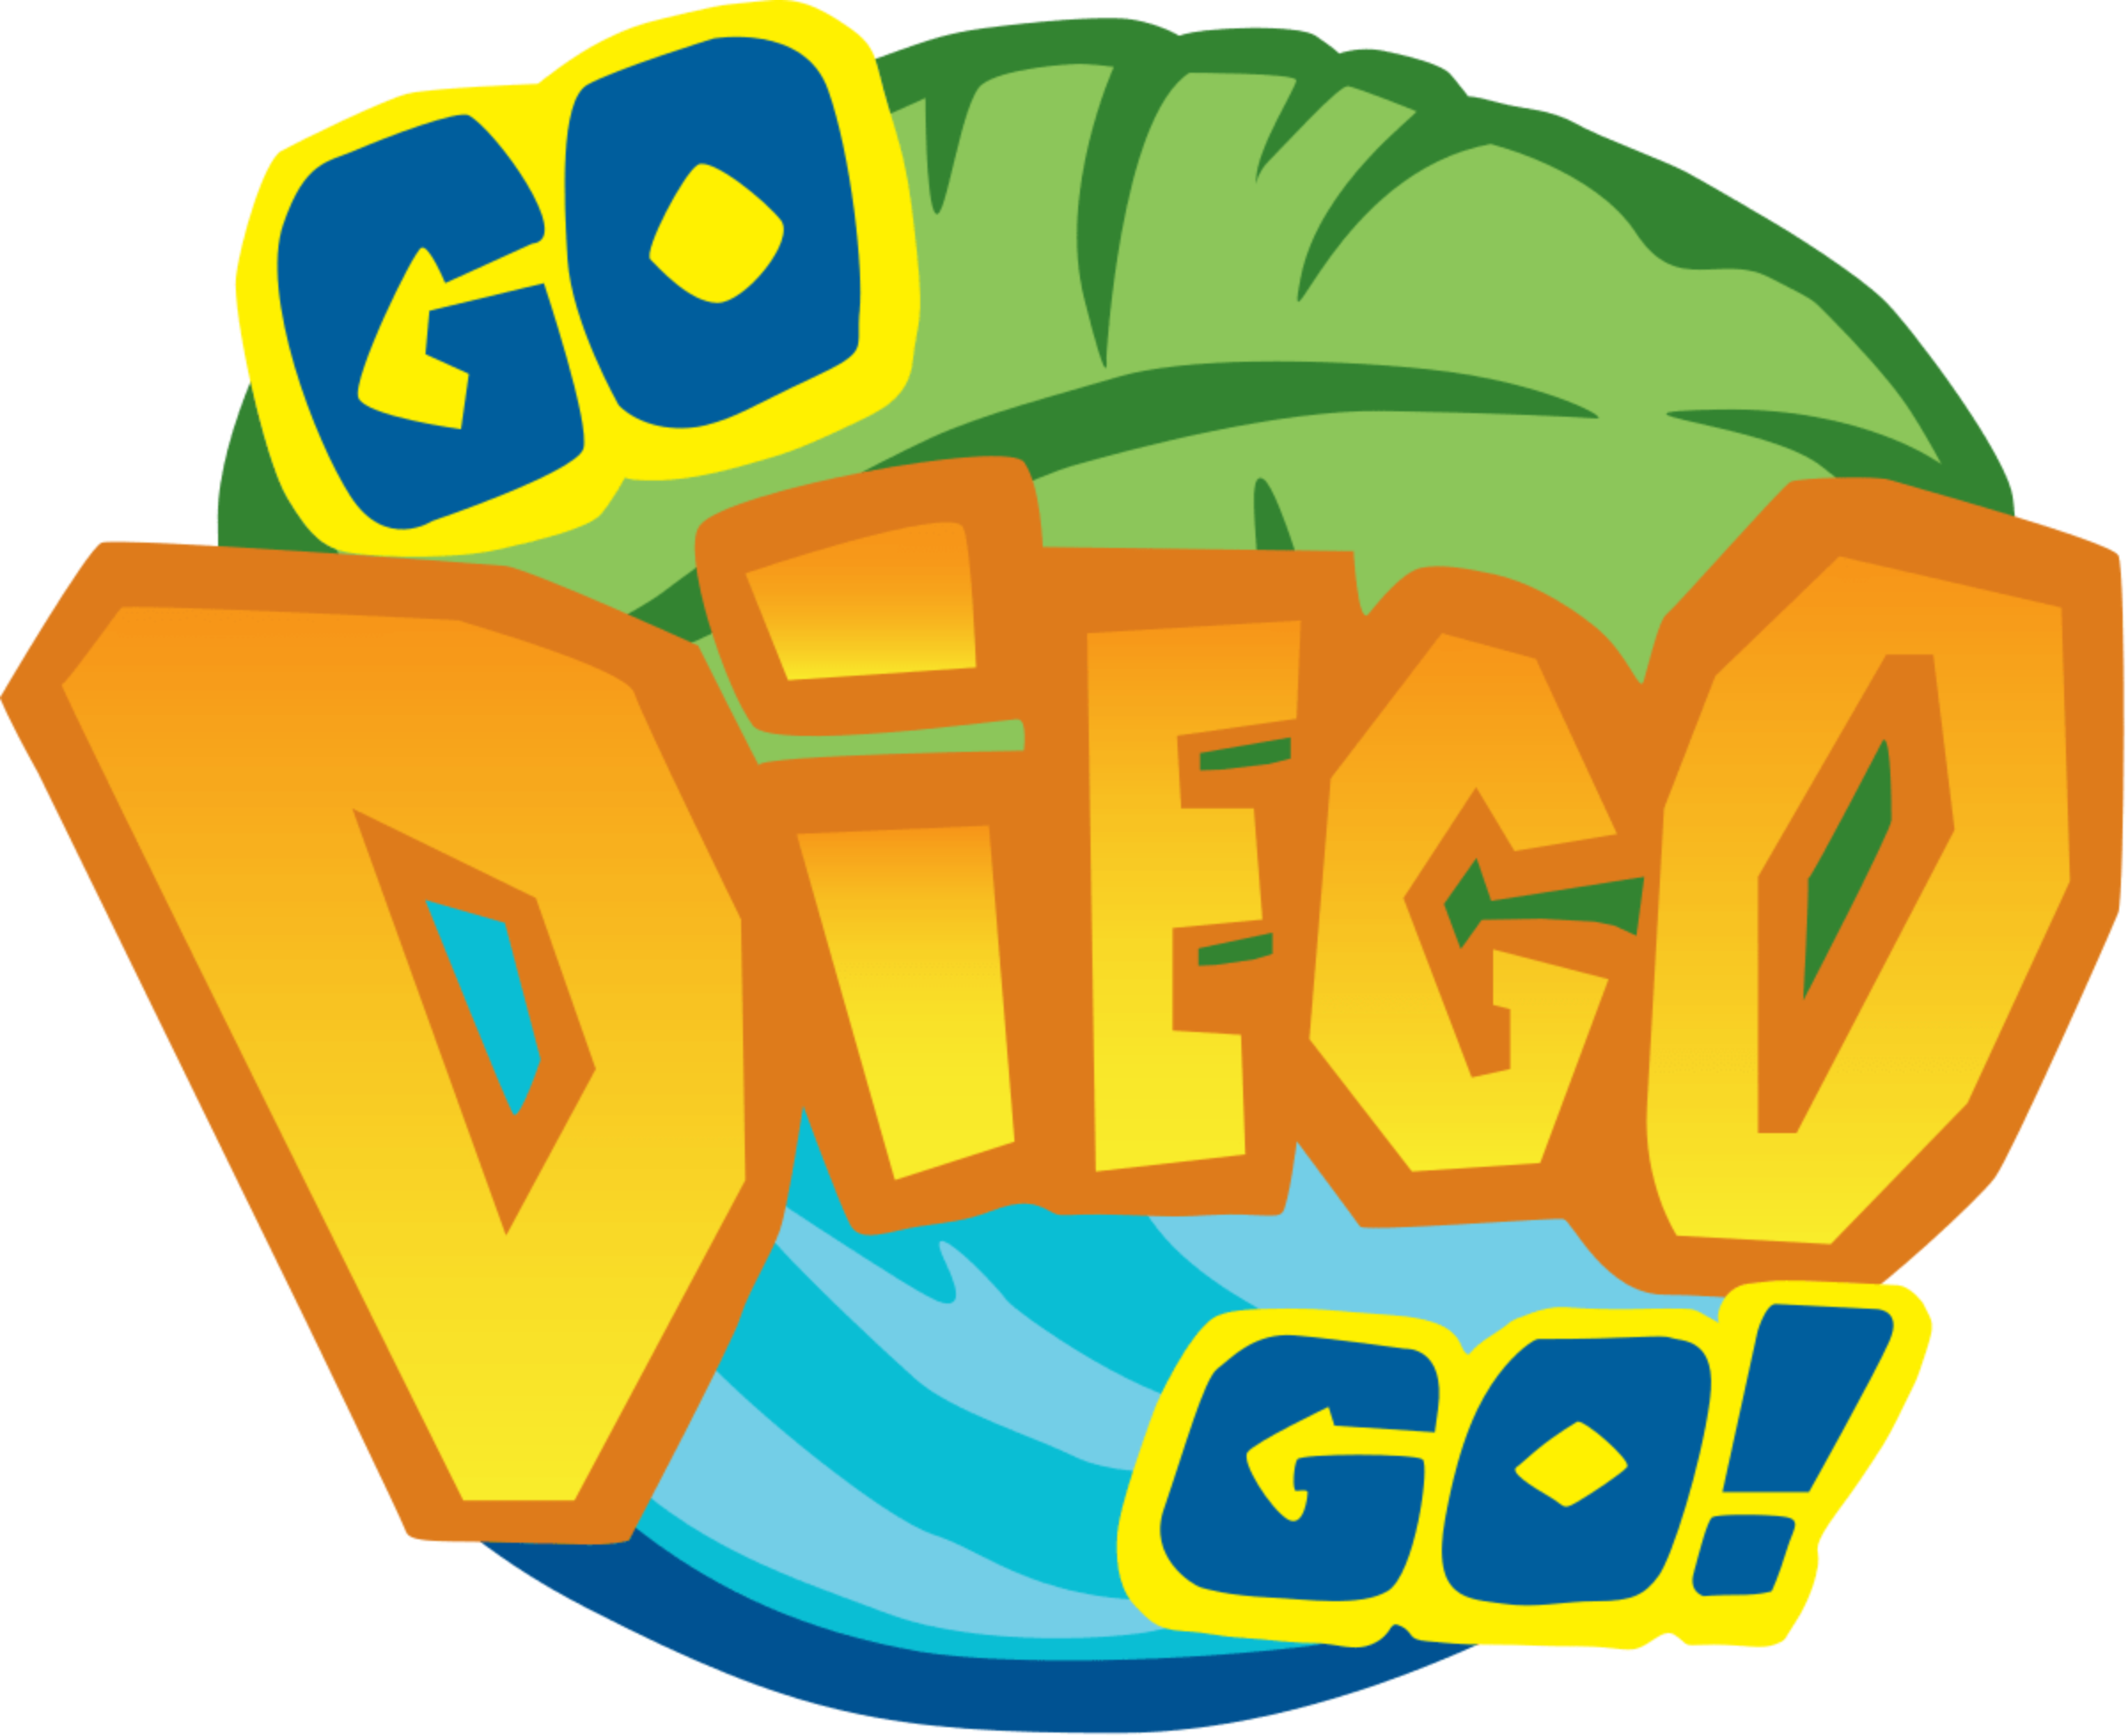 Go, Diego, Go! 